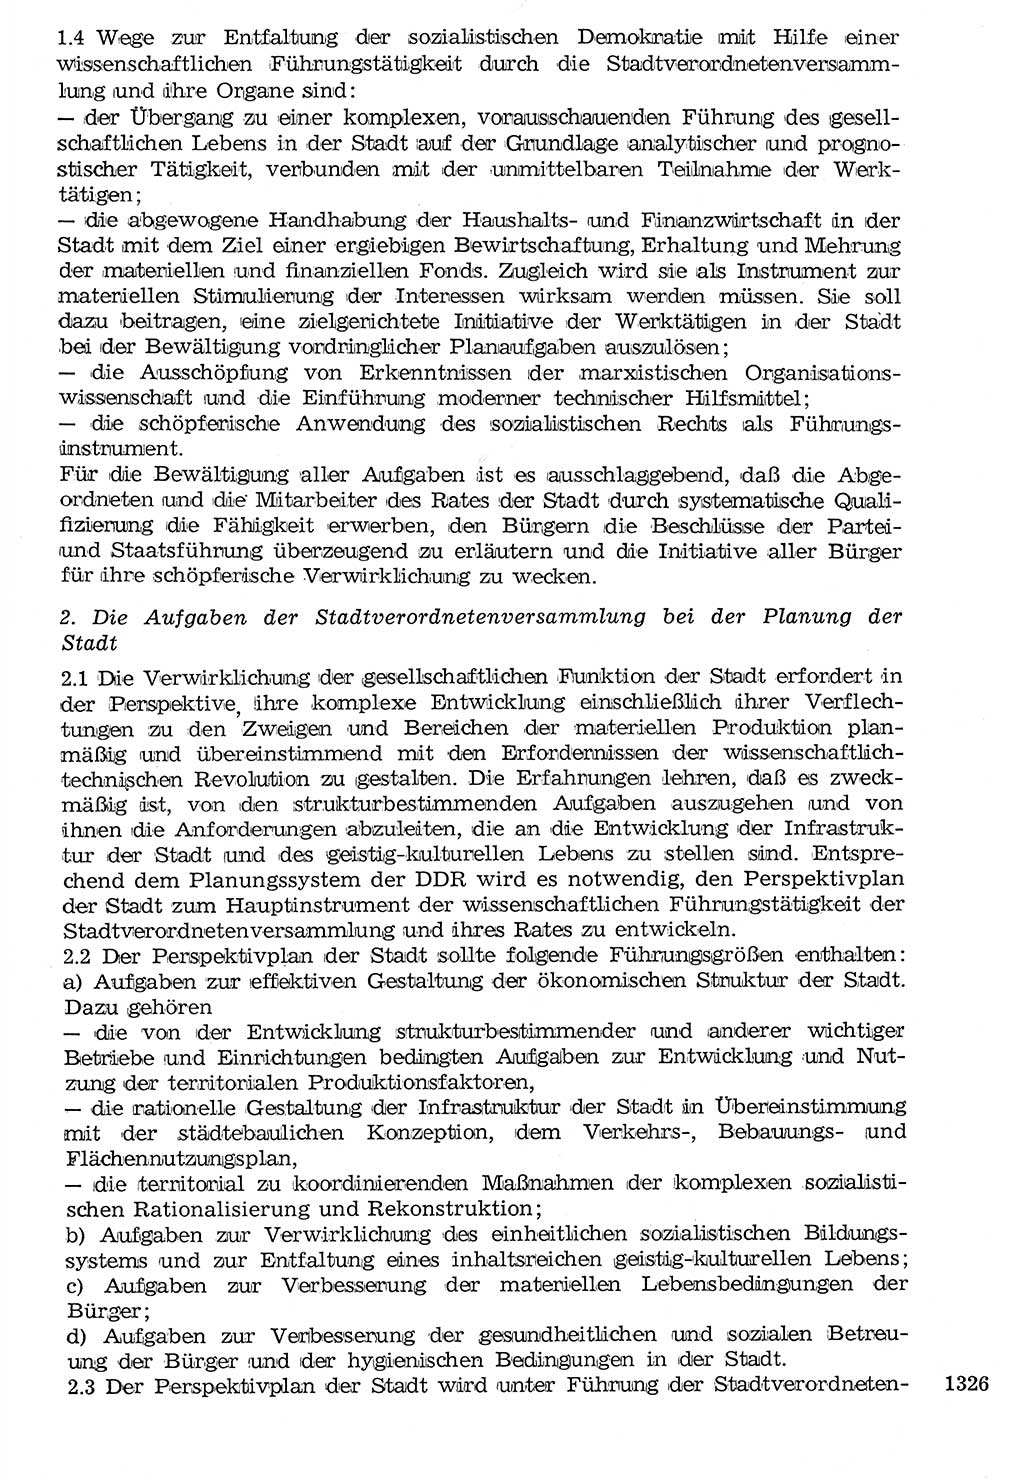 Staat und Recht (StuR), 17. Jahrgang [Deutsche Demokratische Republik (DDR)] 1968, Seite 1326 (StuR DDR 1968, S. 1326)